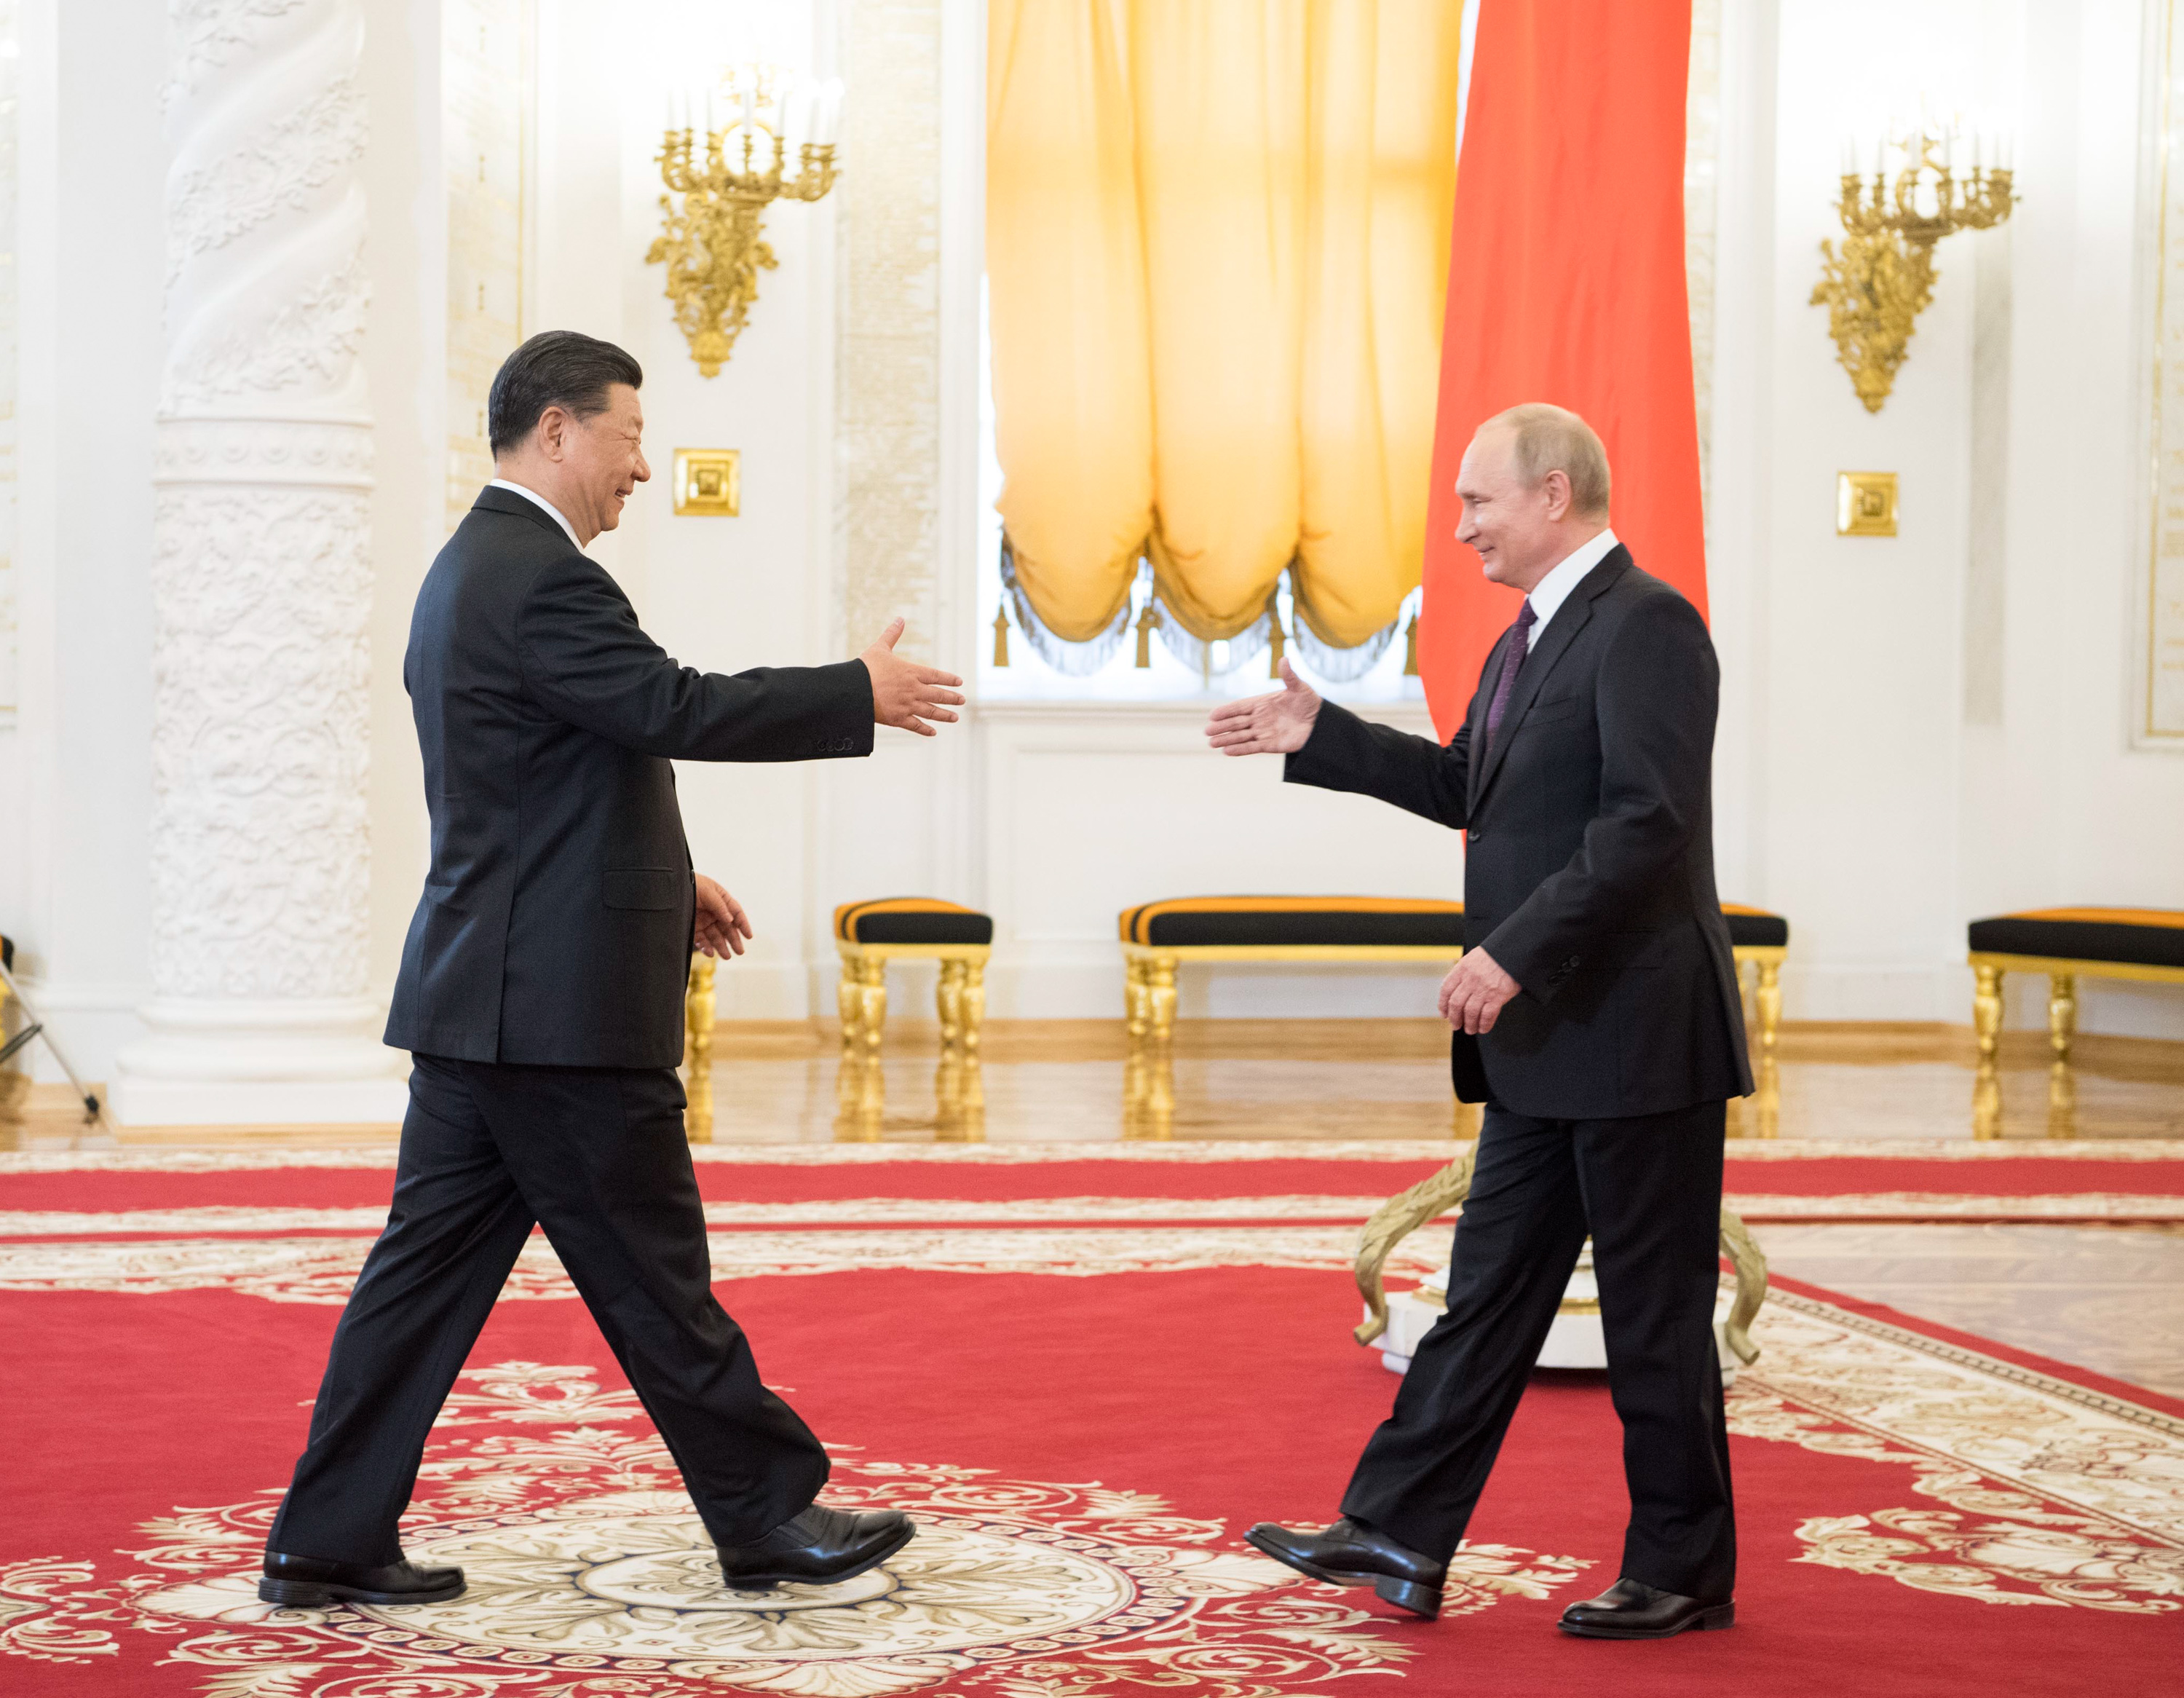 普京抵达白俄罗斯与礼仪握手一幕